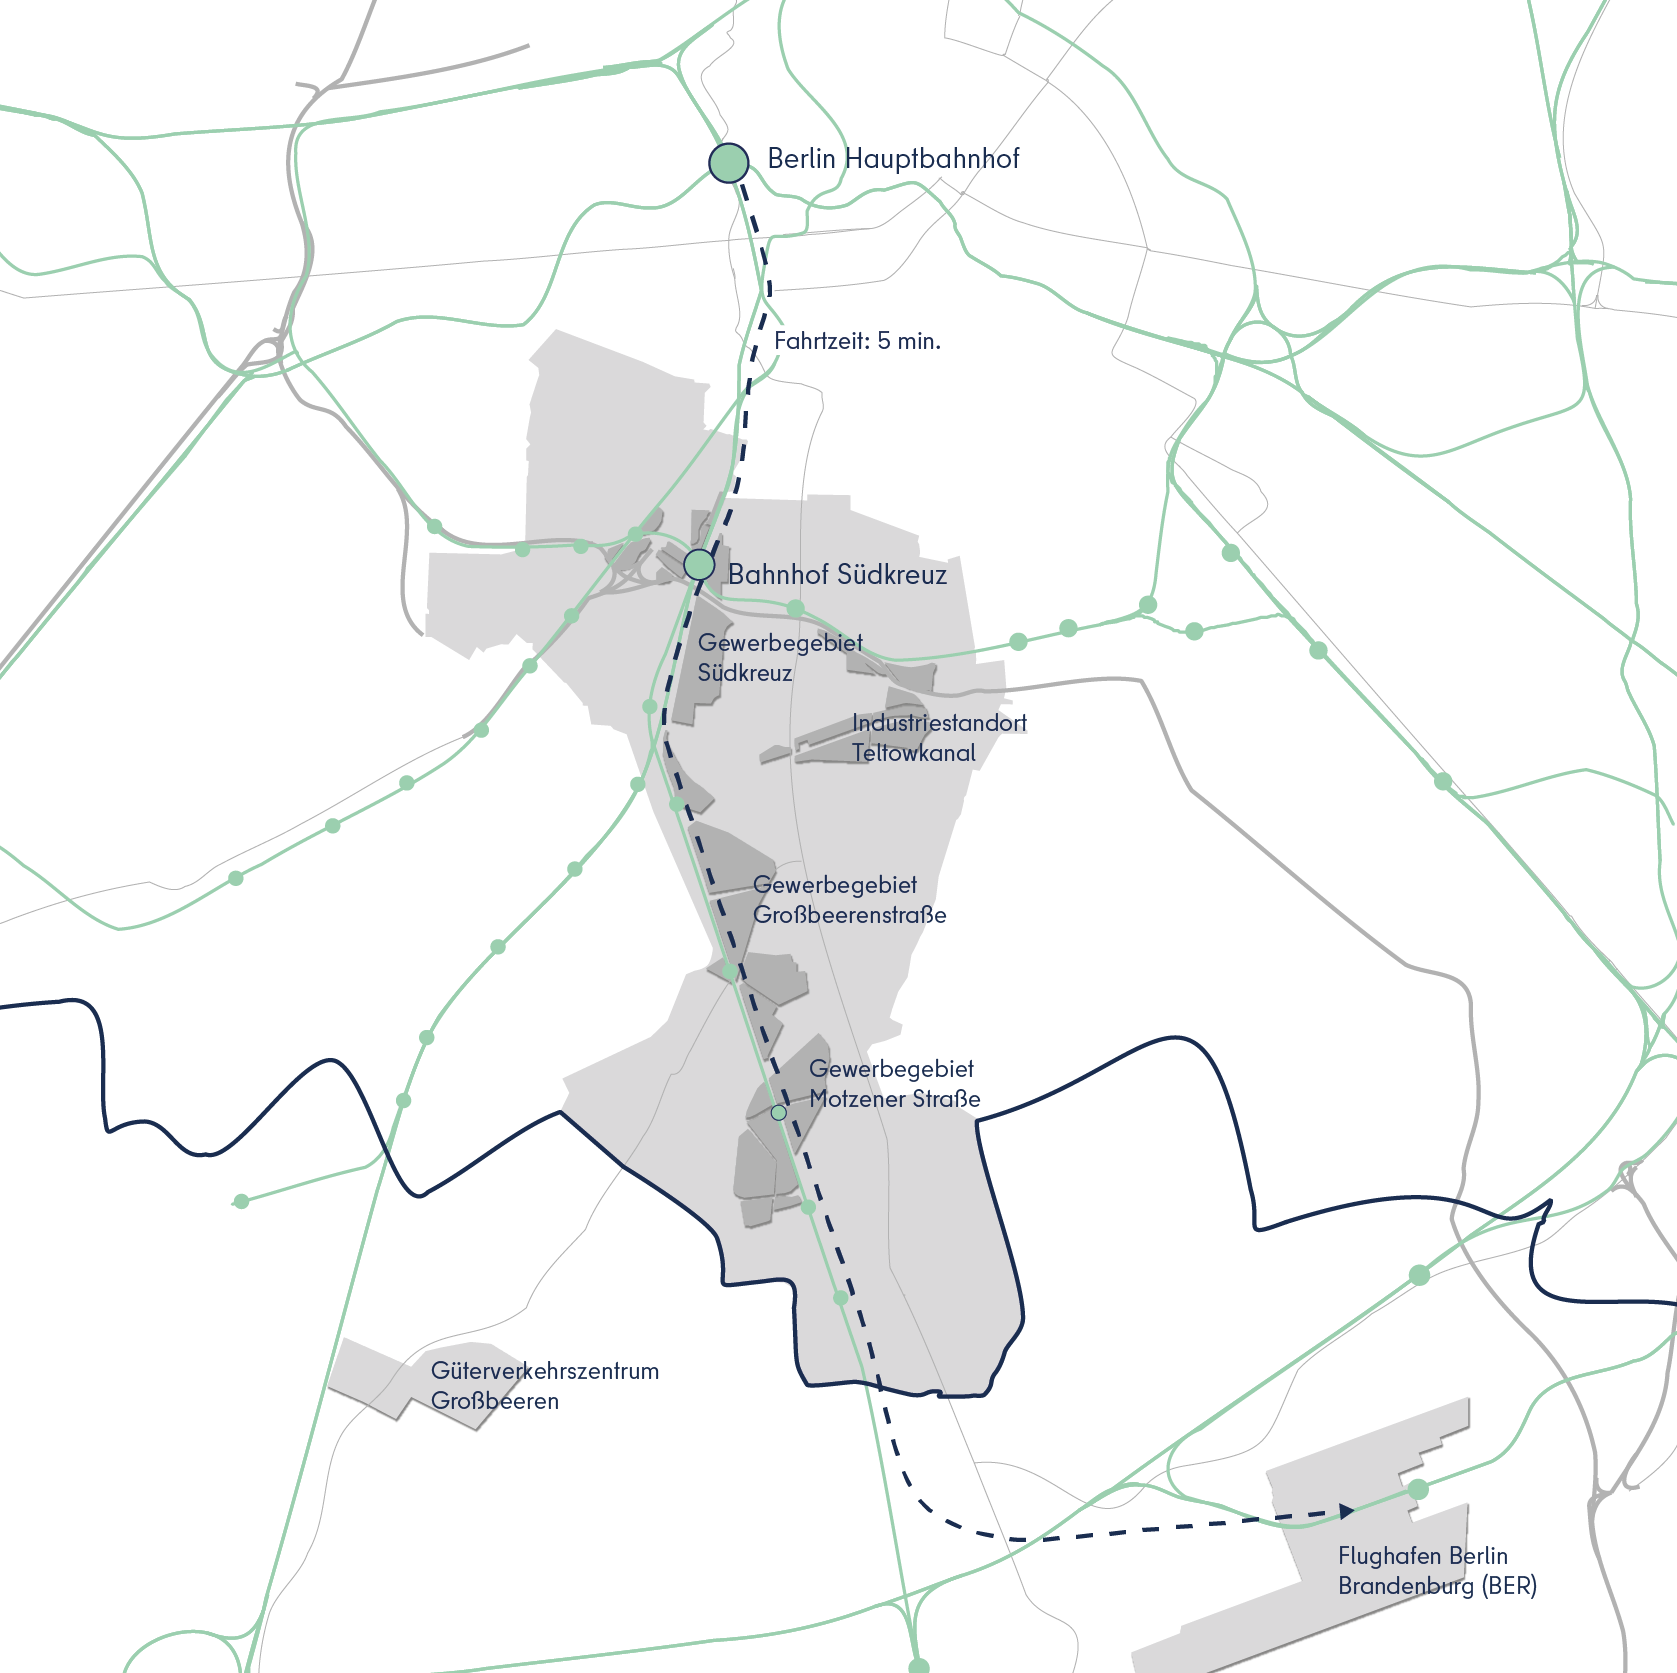 Karte des Bezirks eingebettet in den Gesamtraum Berlin-Brandenburg mit Verkehrsverbindungen